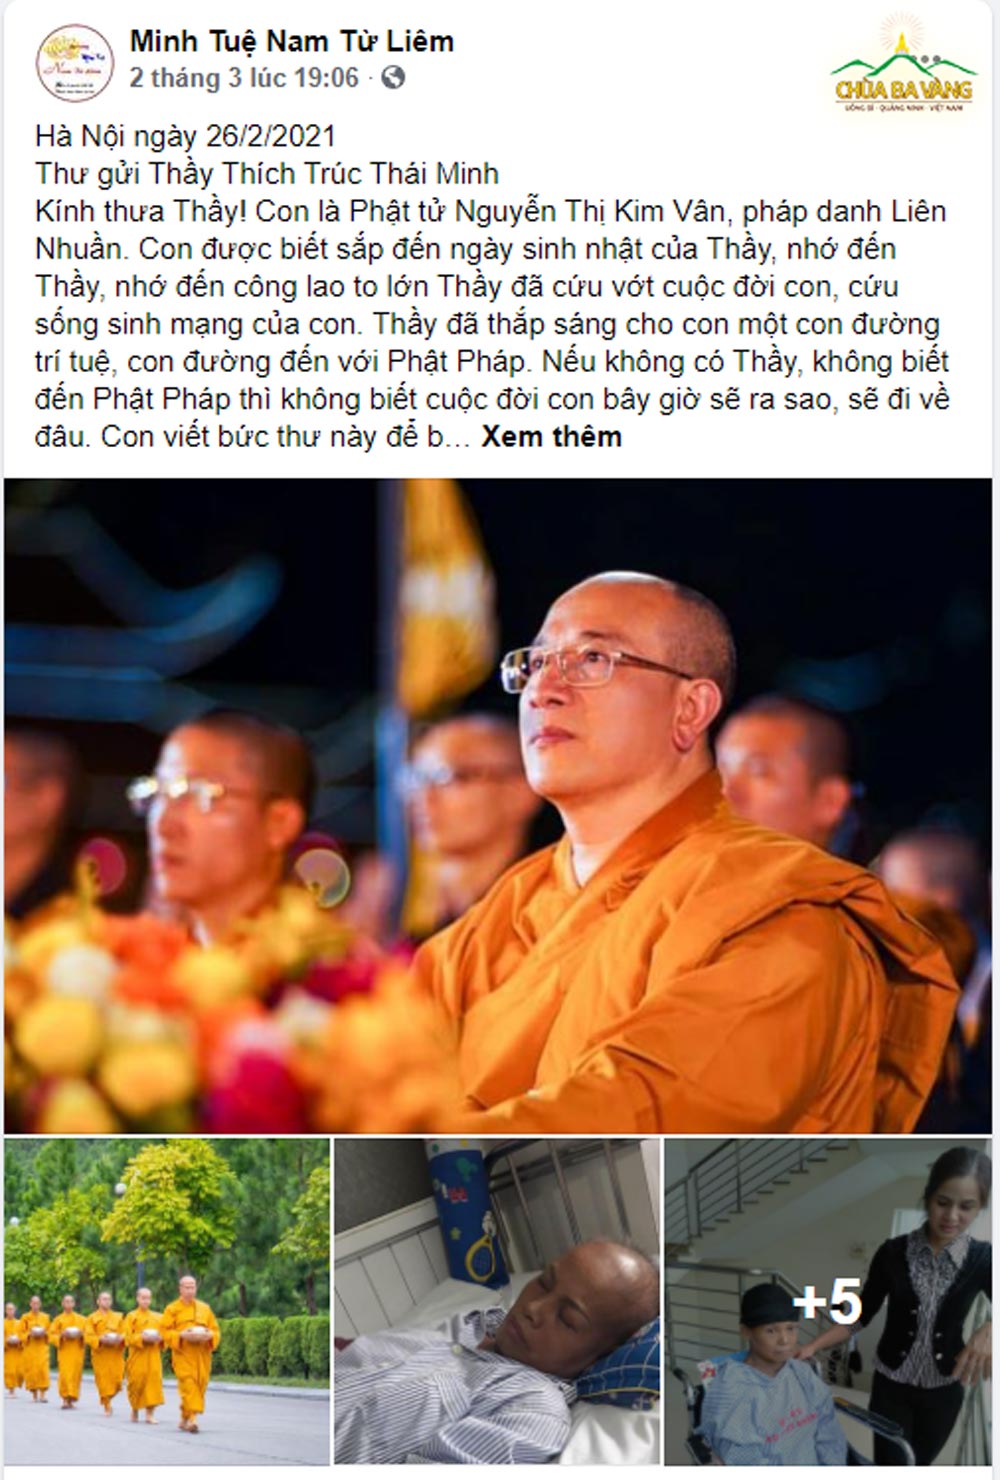 Chia sẻ của Phật tử Nguyễn Thị Kim Vân được đăng trên trang Facebook Minh Tuệ Nam Từ Liêm